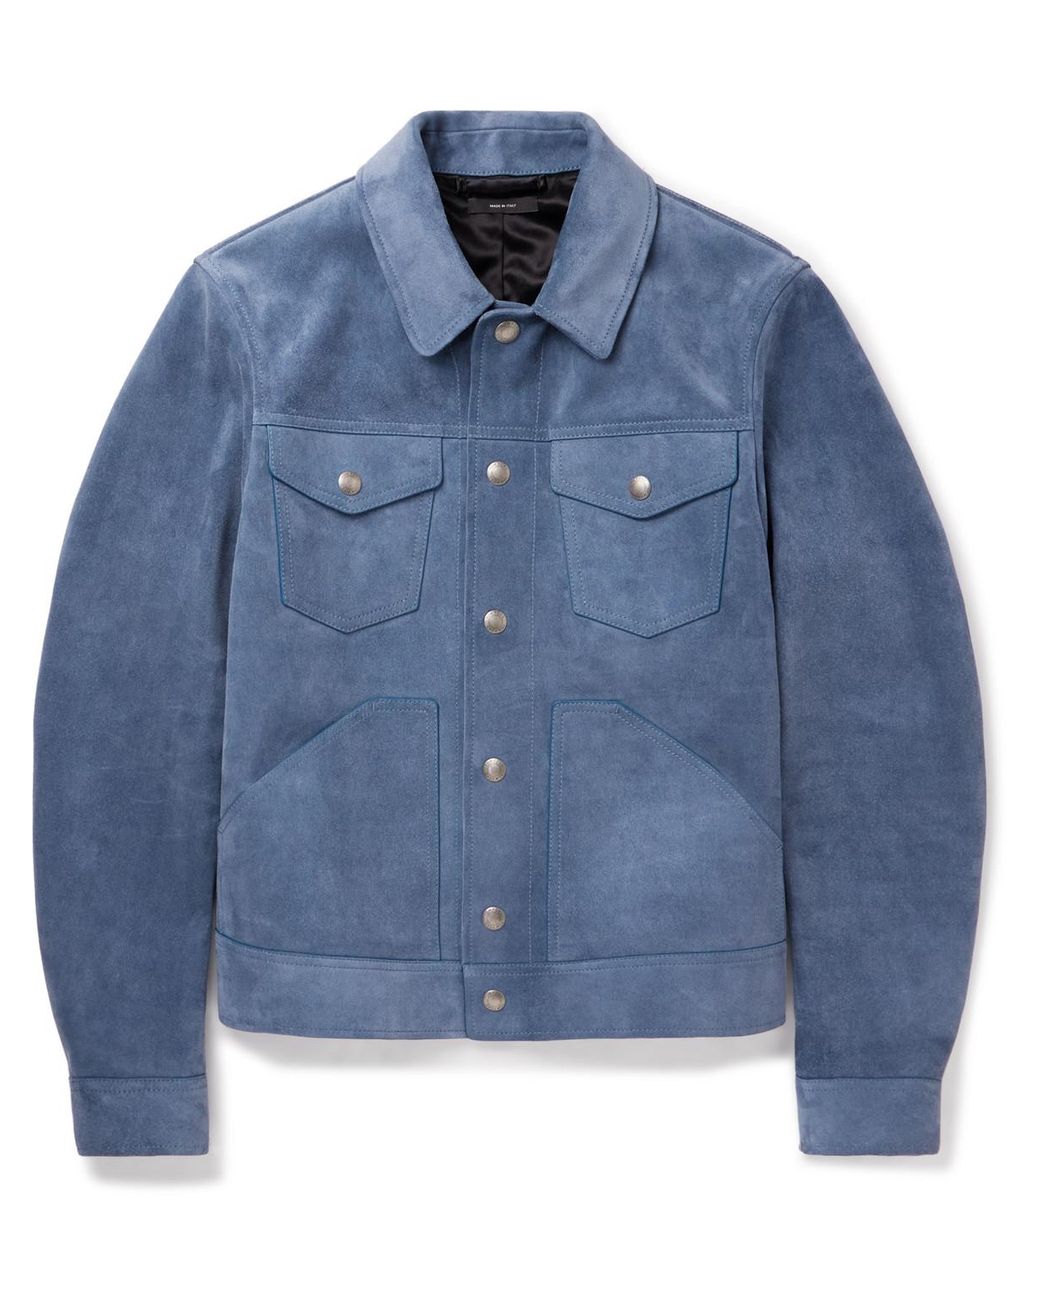 Tom Ford Slim-fit Brushed-suede Jacket in Blue for Men | Lyst